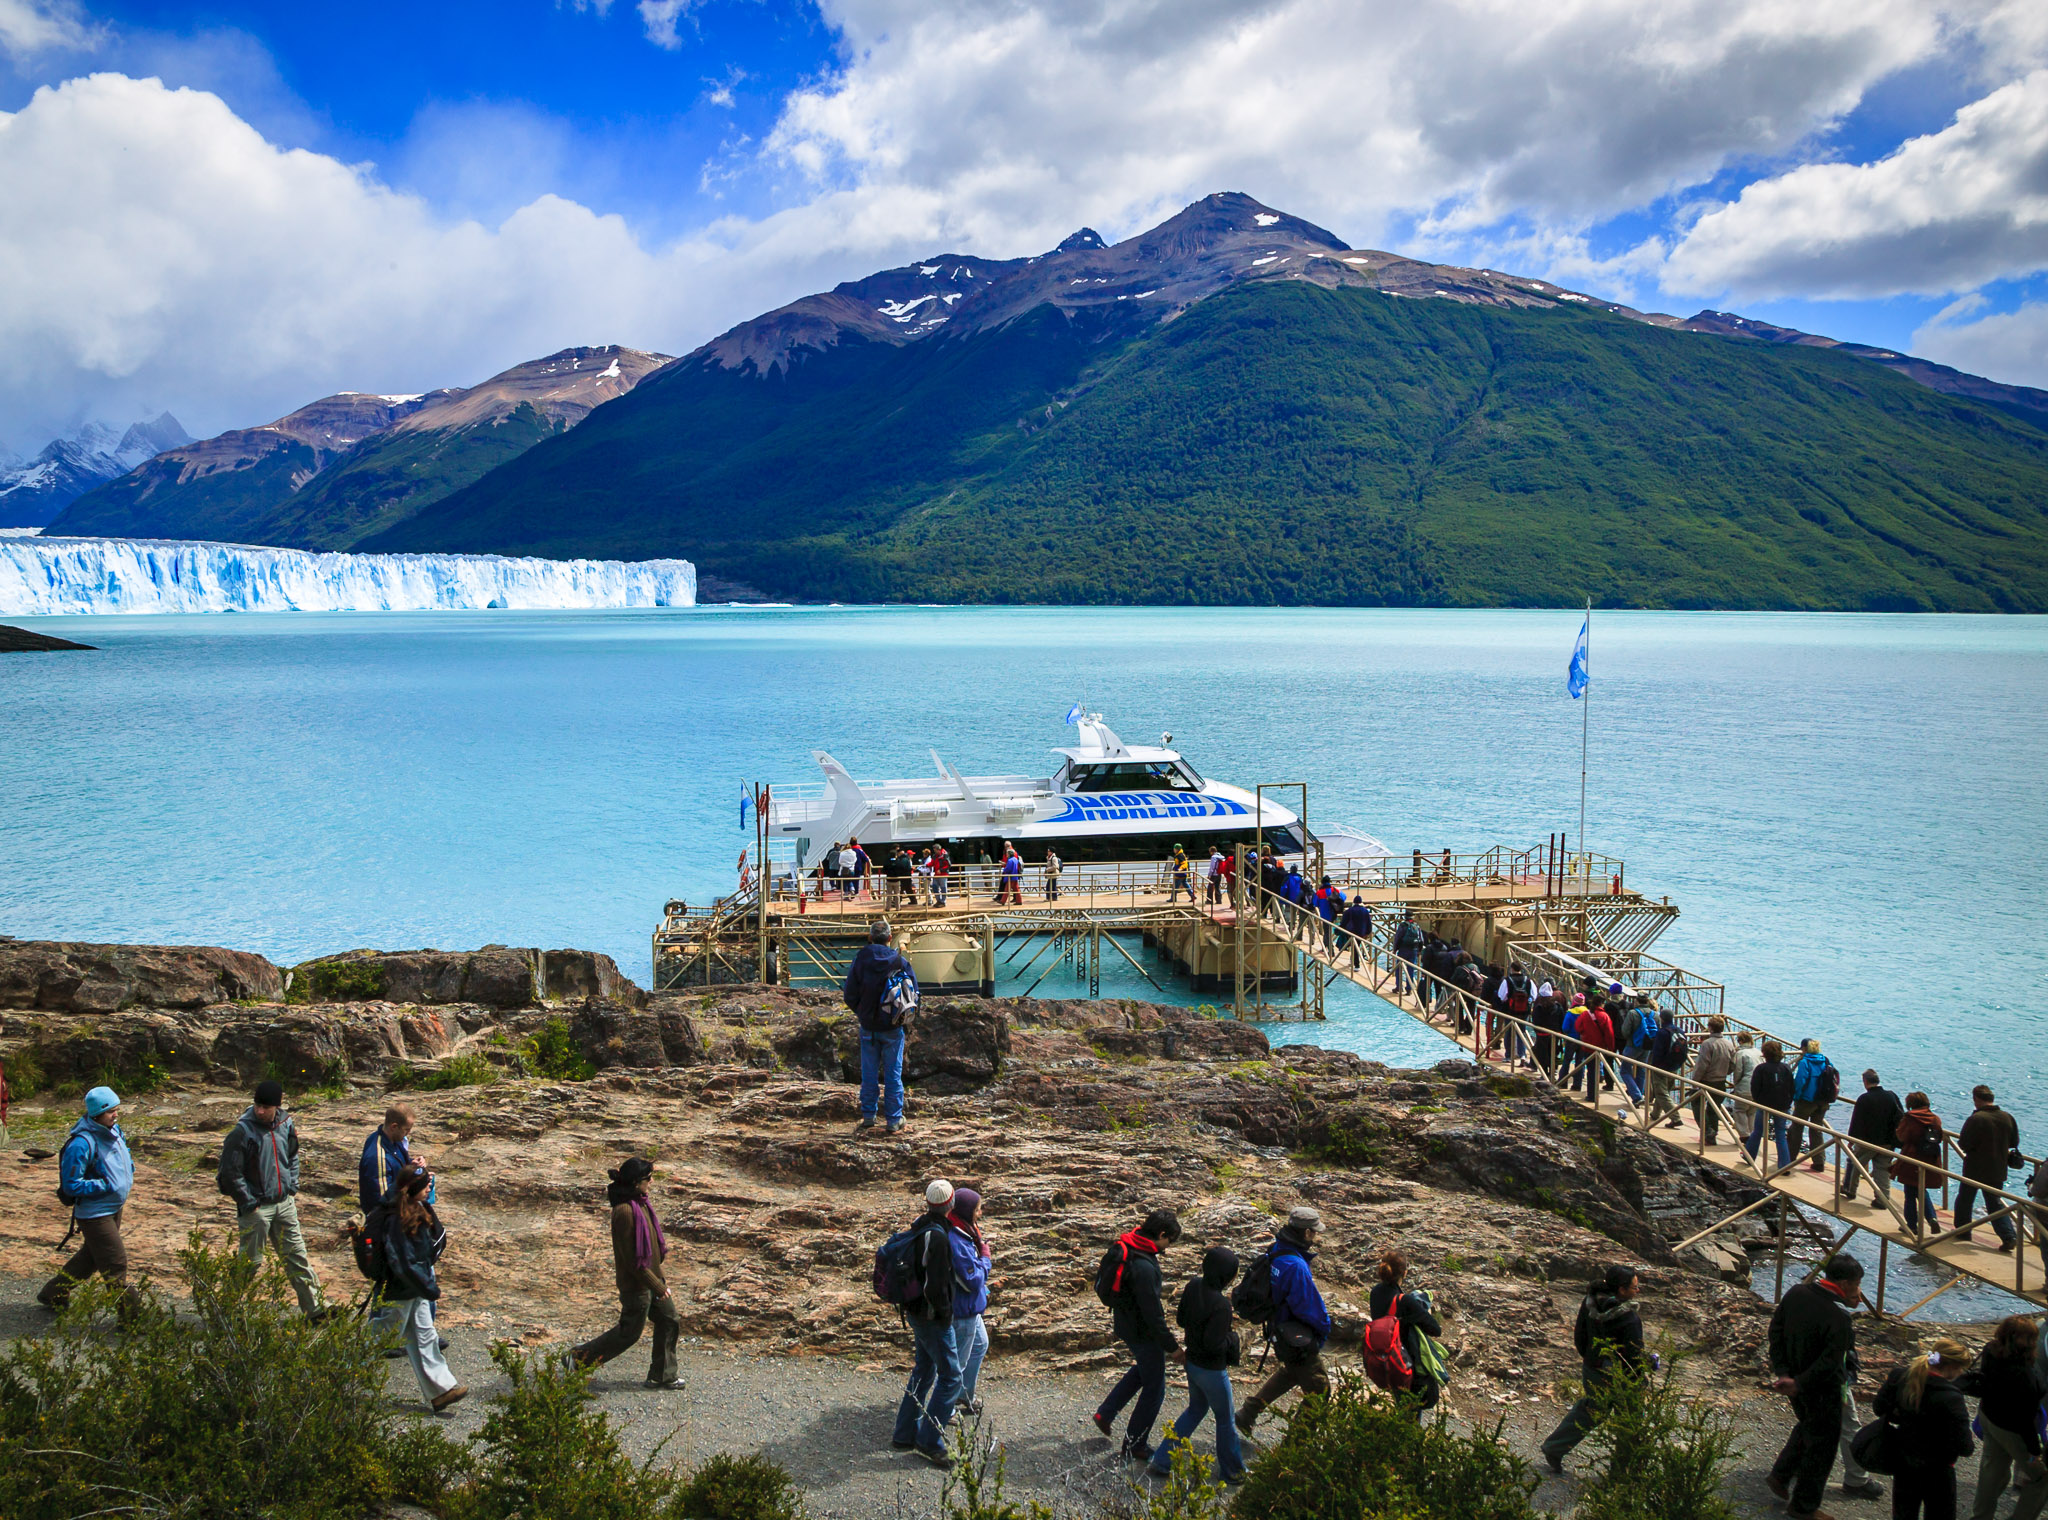 Boarding tour boat, Perito Moreno Glacier